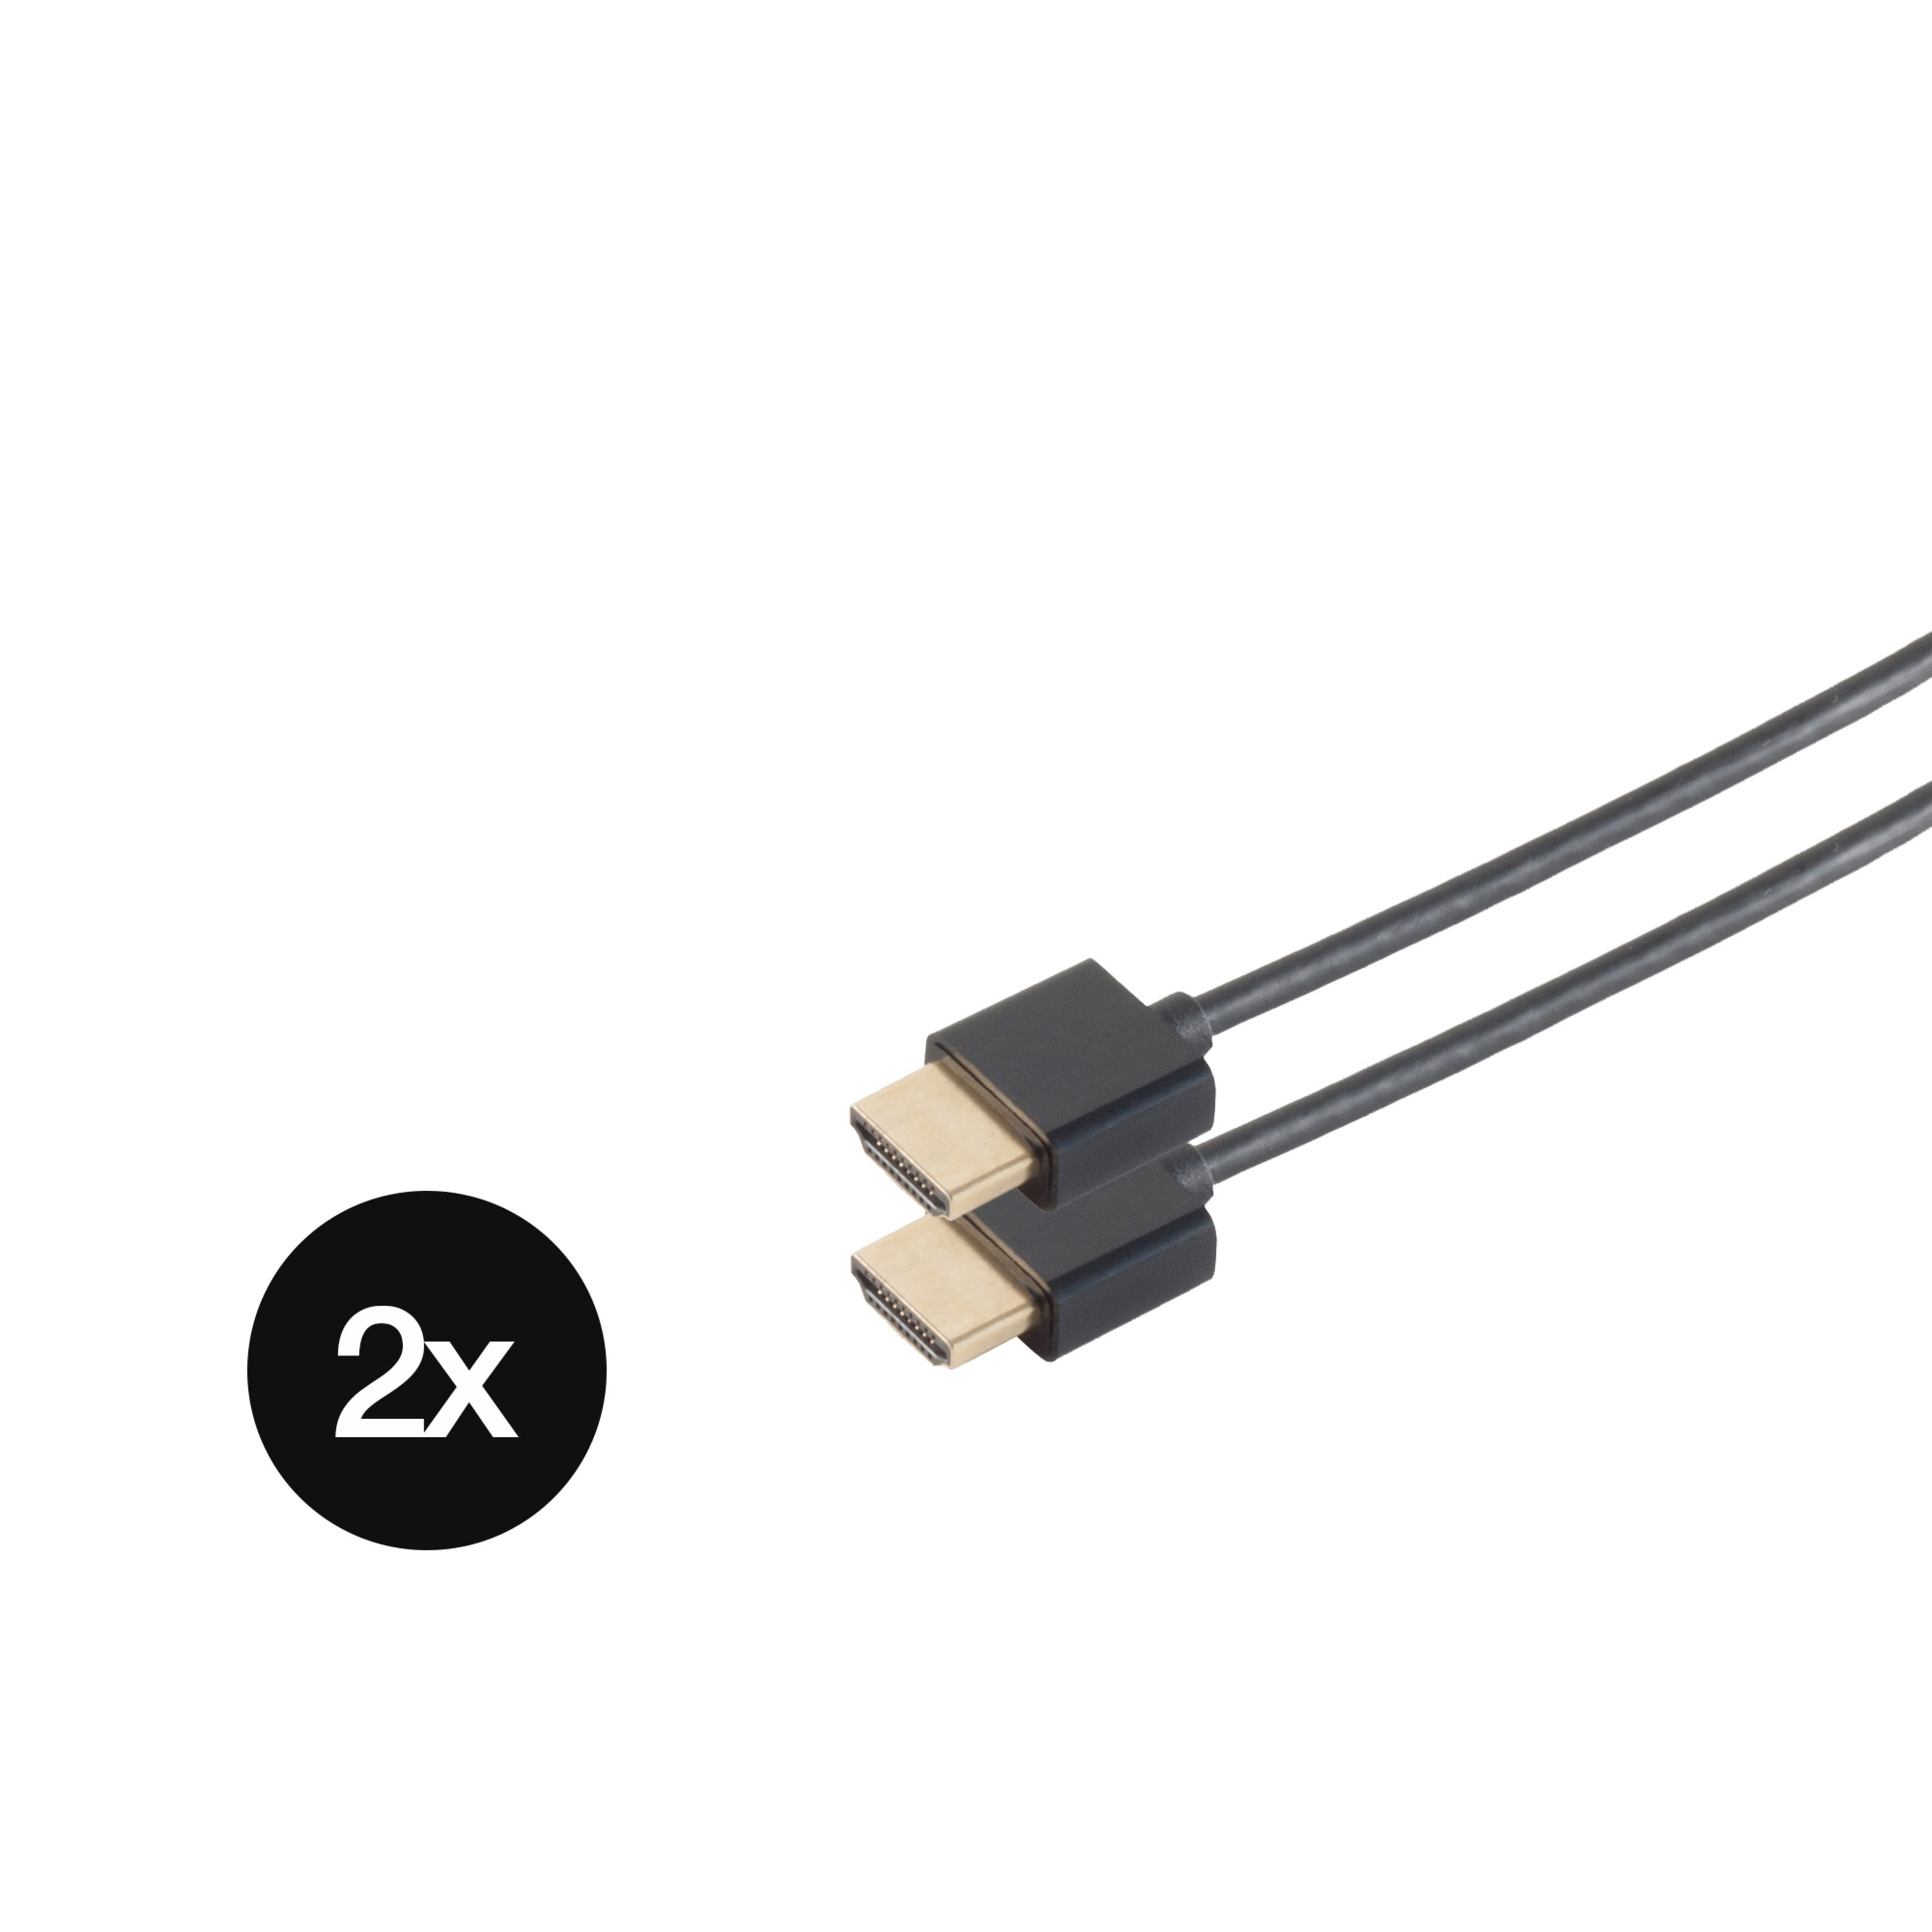 dünn Kabel SLIM-HDMI KABELBUDE 2 x SET schwarz extra Kabel 1,5m HDMI